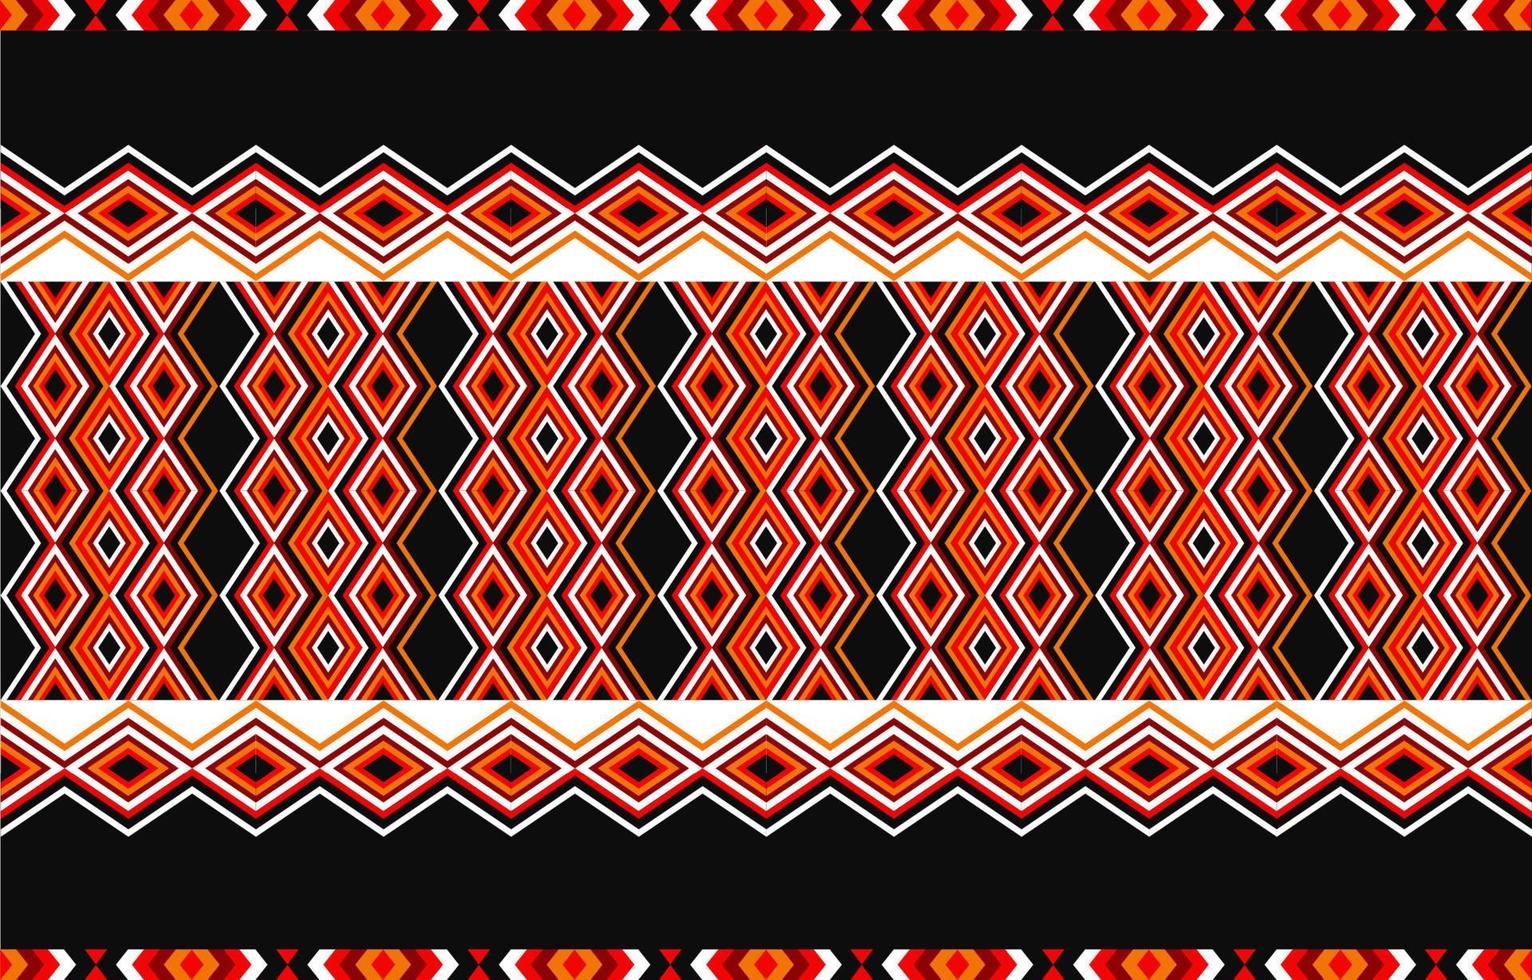 diseño tradicional de patrón étnico tribal americano para alfombra, papel pintado, envoltura, batik, tela, cortina, fondo, ropa, estilo de bordado de ilustración vectorial. vector